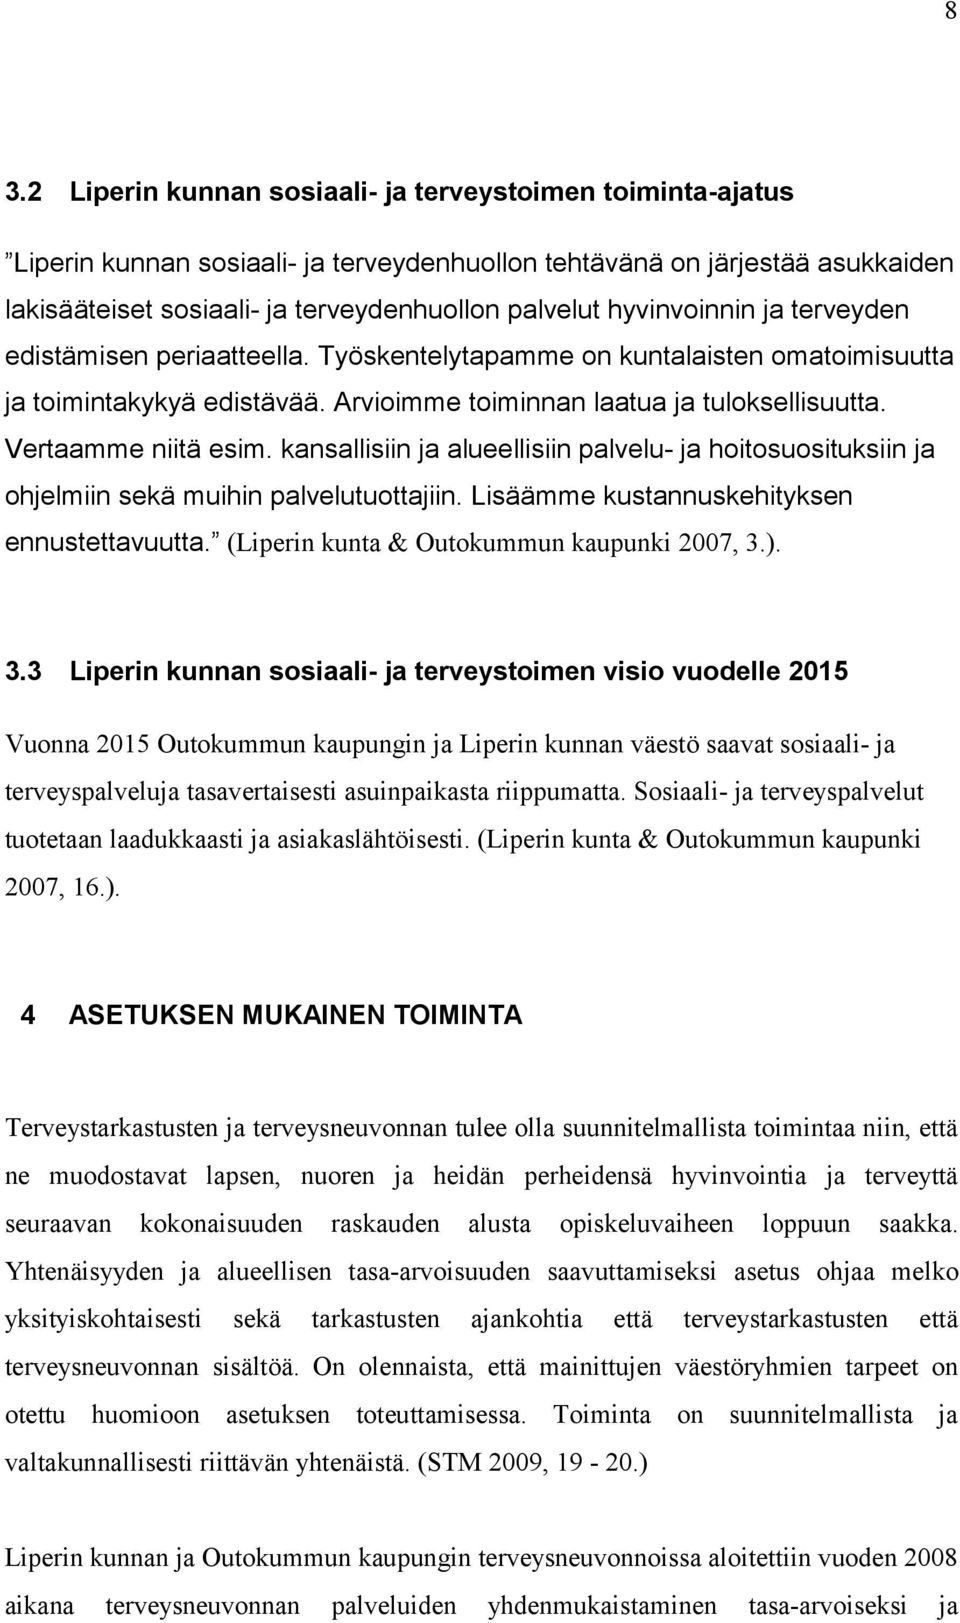 kansallisiin ja alueellisiin palvelu- ja hoitosuosituksiin ja ohjelmiin sekä muihin palvelutuottajiin. Lisäämme kustannuskehityksen ennustettavuutta. (Liperin kunta & Outokummun kaupunki 2007, 3.